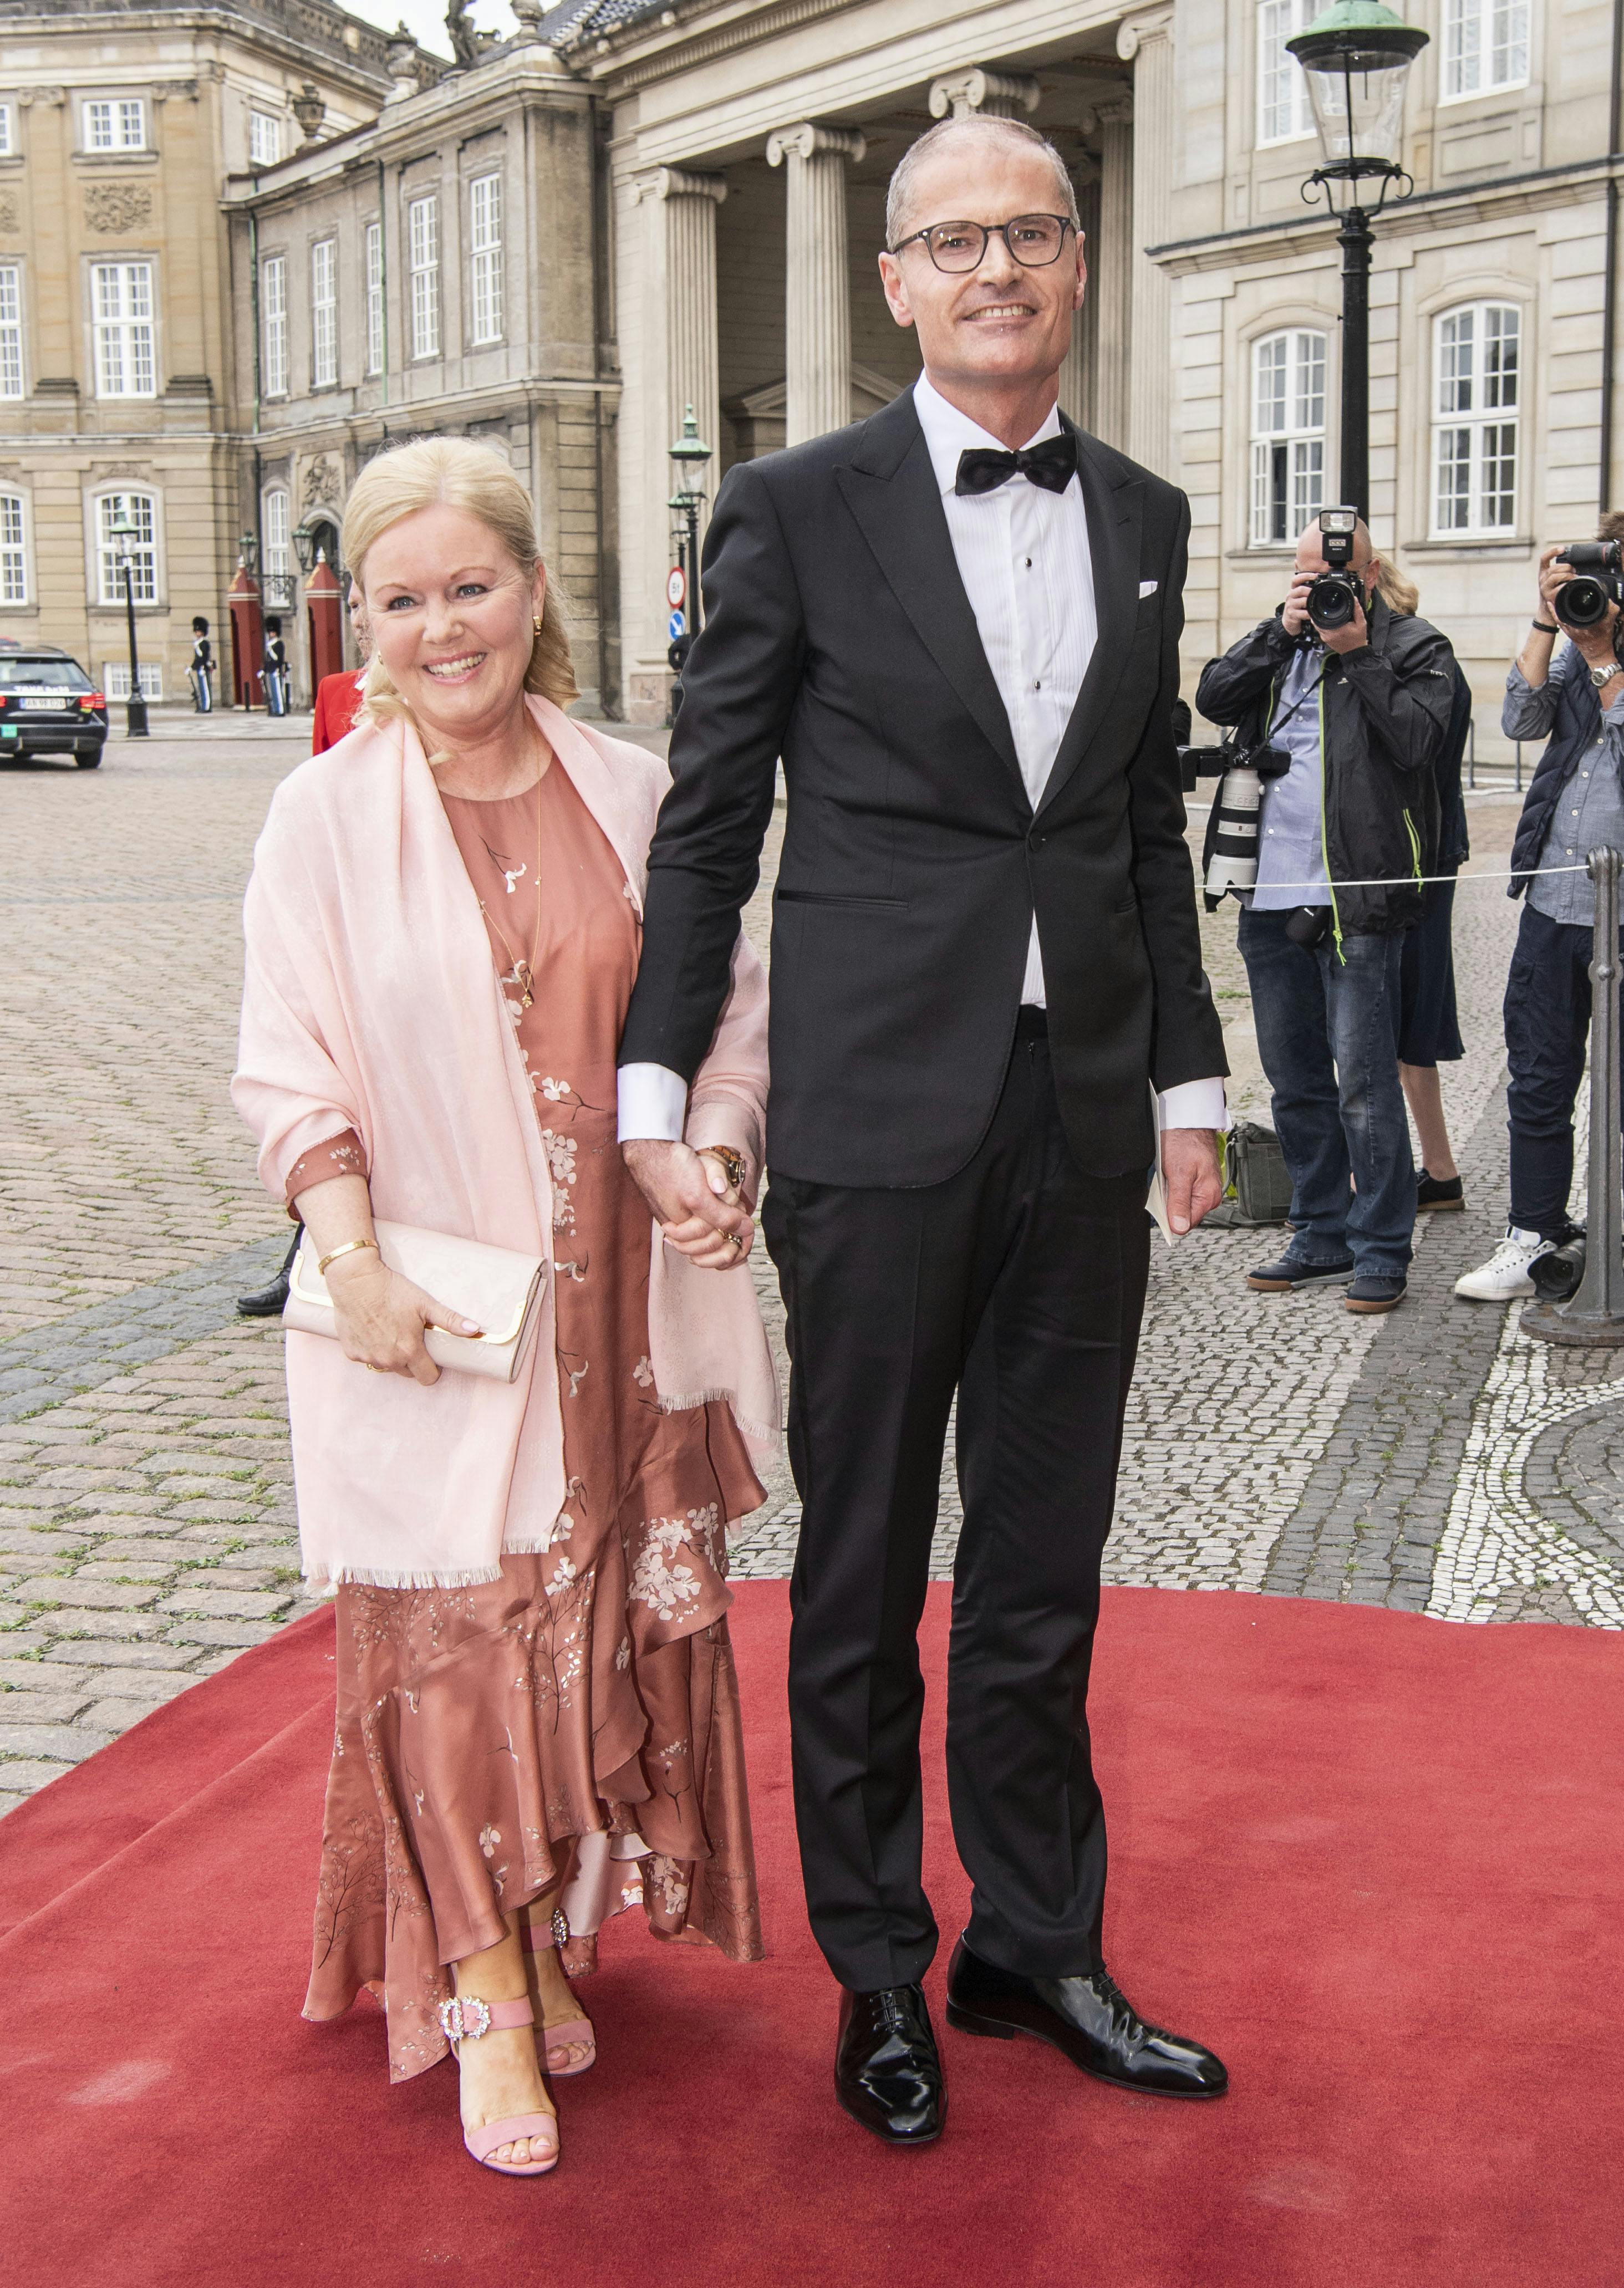 OPGAVE: Dronning Margrethe inviterer til middag i anledning af Prins Joachims 50 Œrs f¿dselsdag. G¾sterne ankommer.STED:  AmalienborgDATO:  20190607FOTOGRAF: Hanne Juul